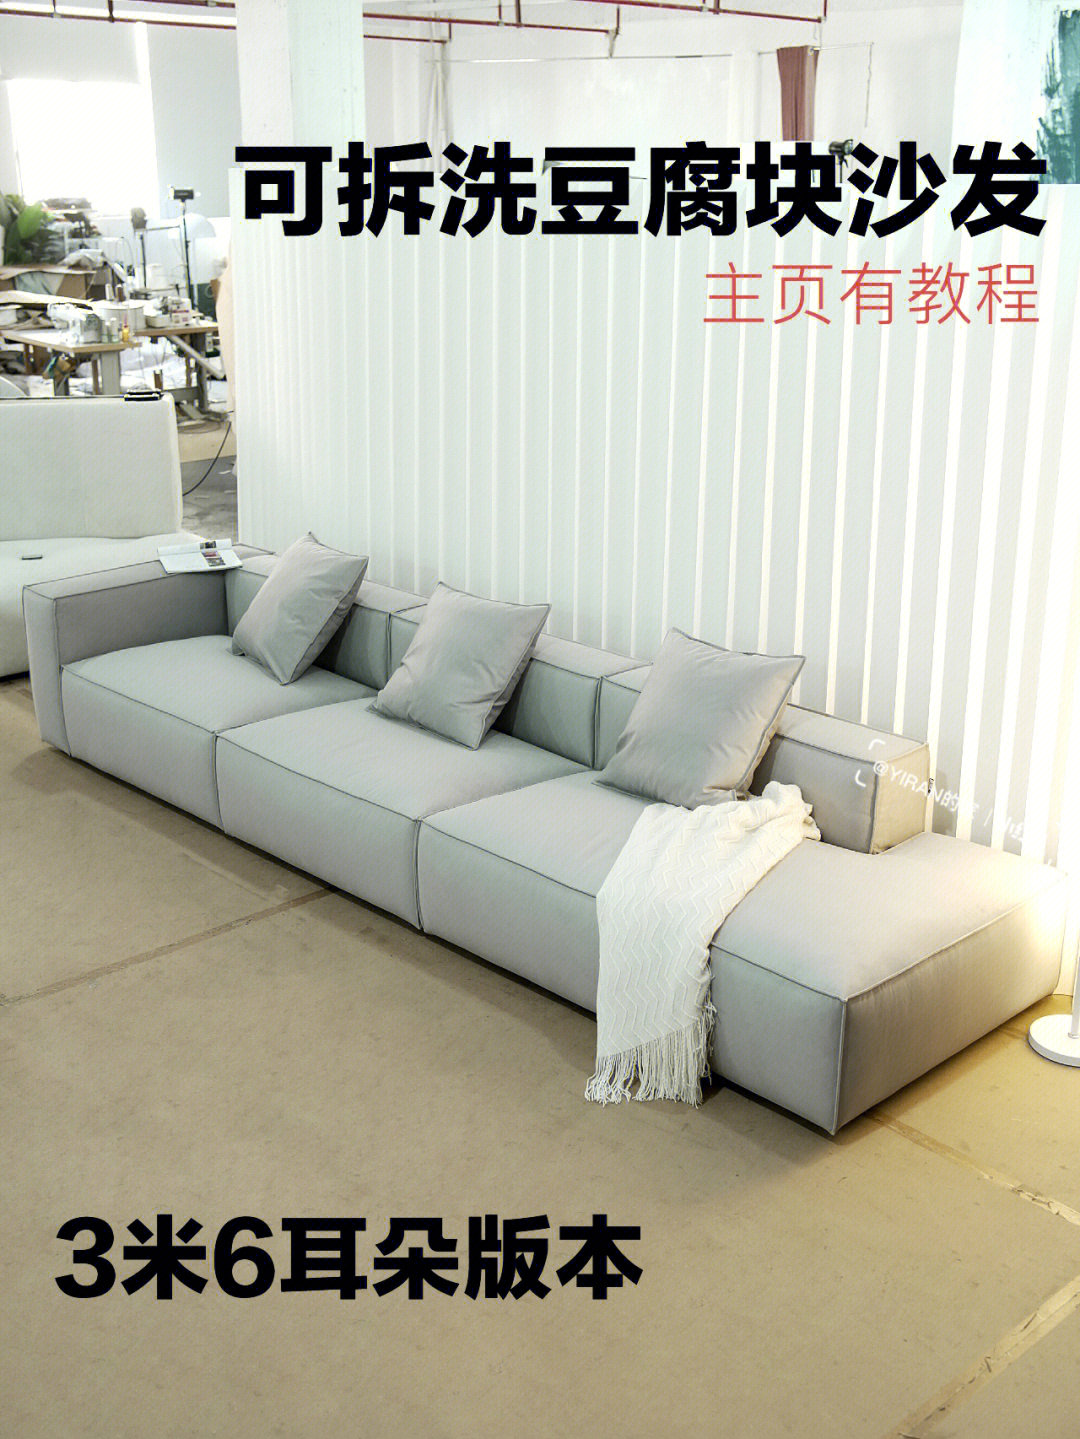 布料虽然本身带防水功能,但并不防污豆腐块反正的造型,买沙发垫还